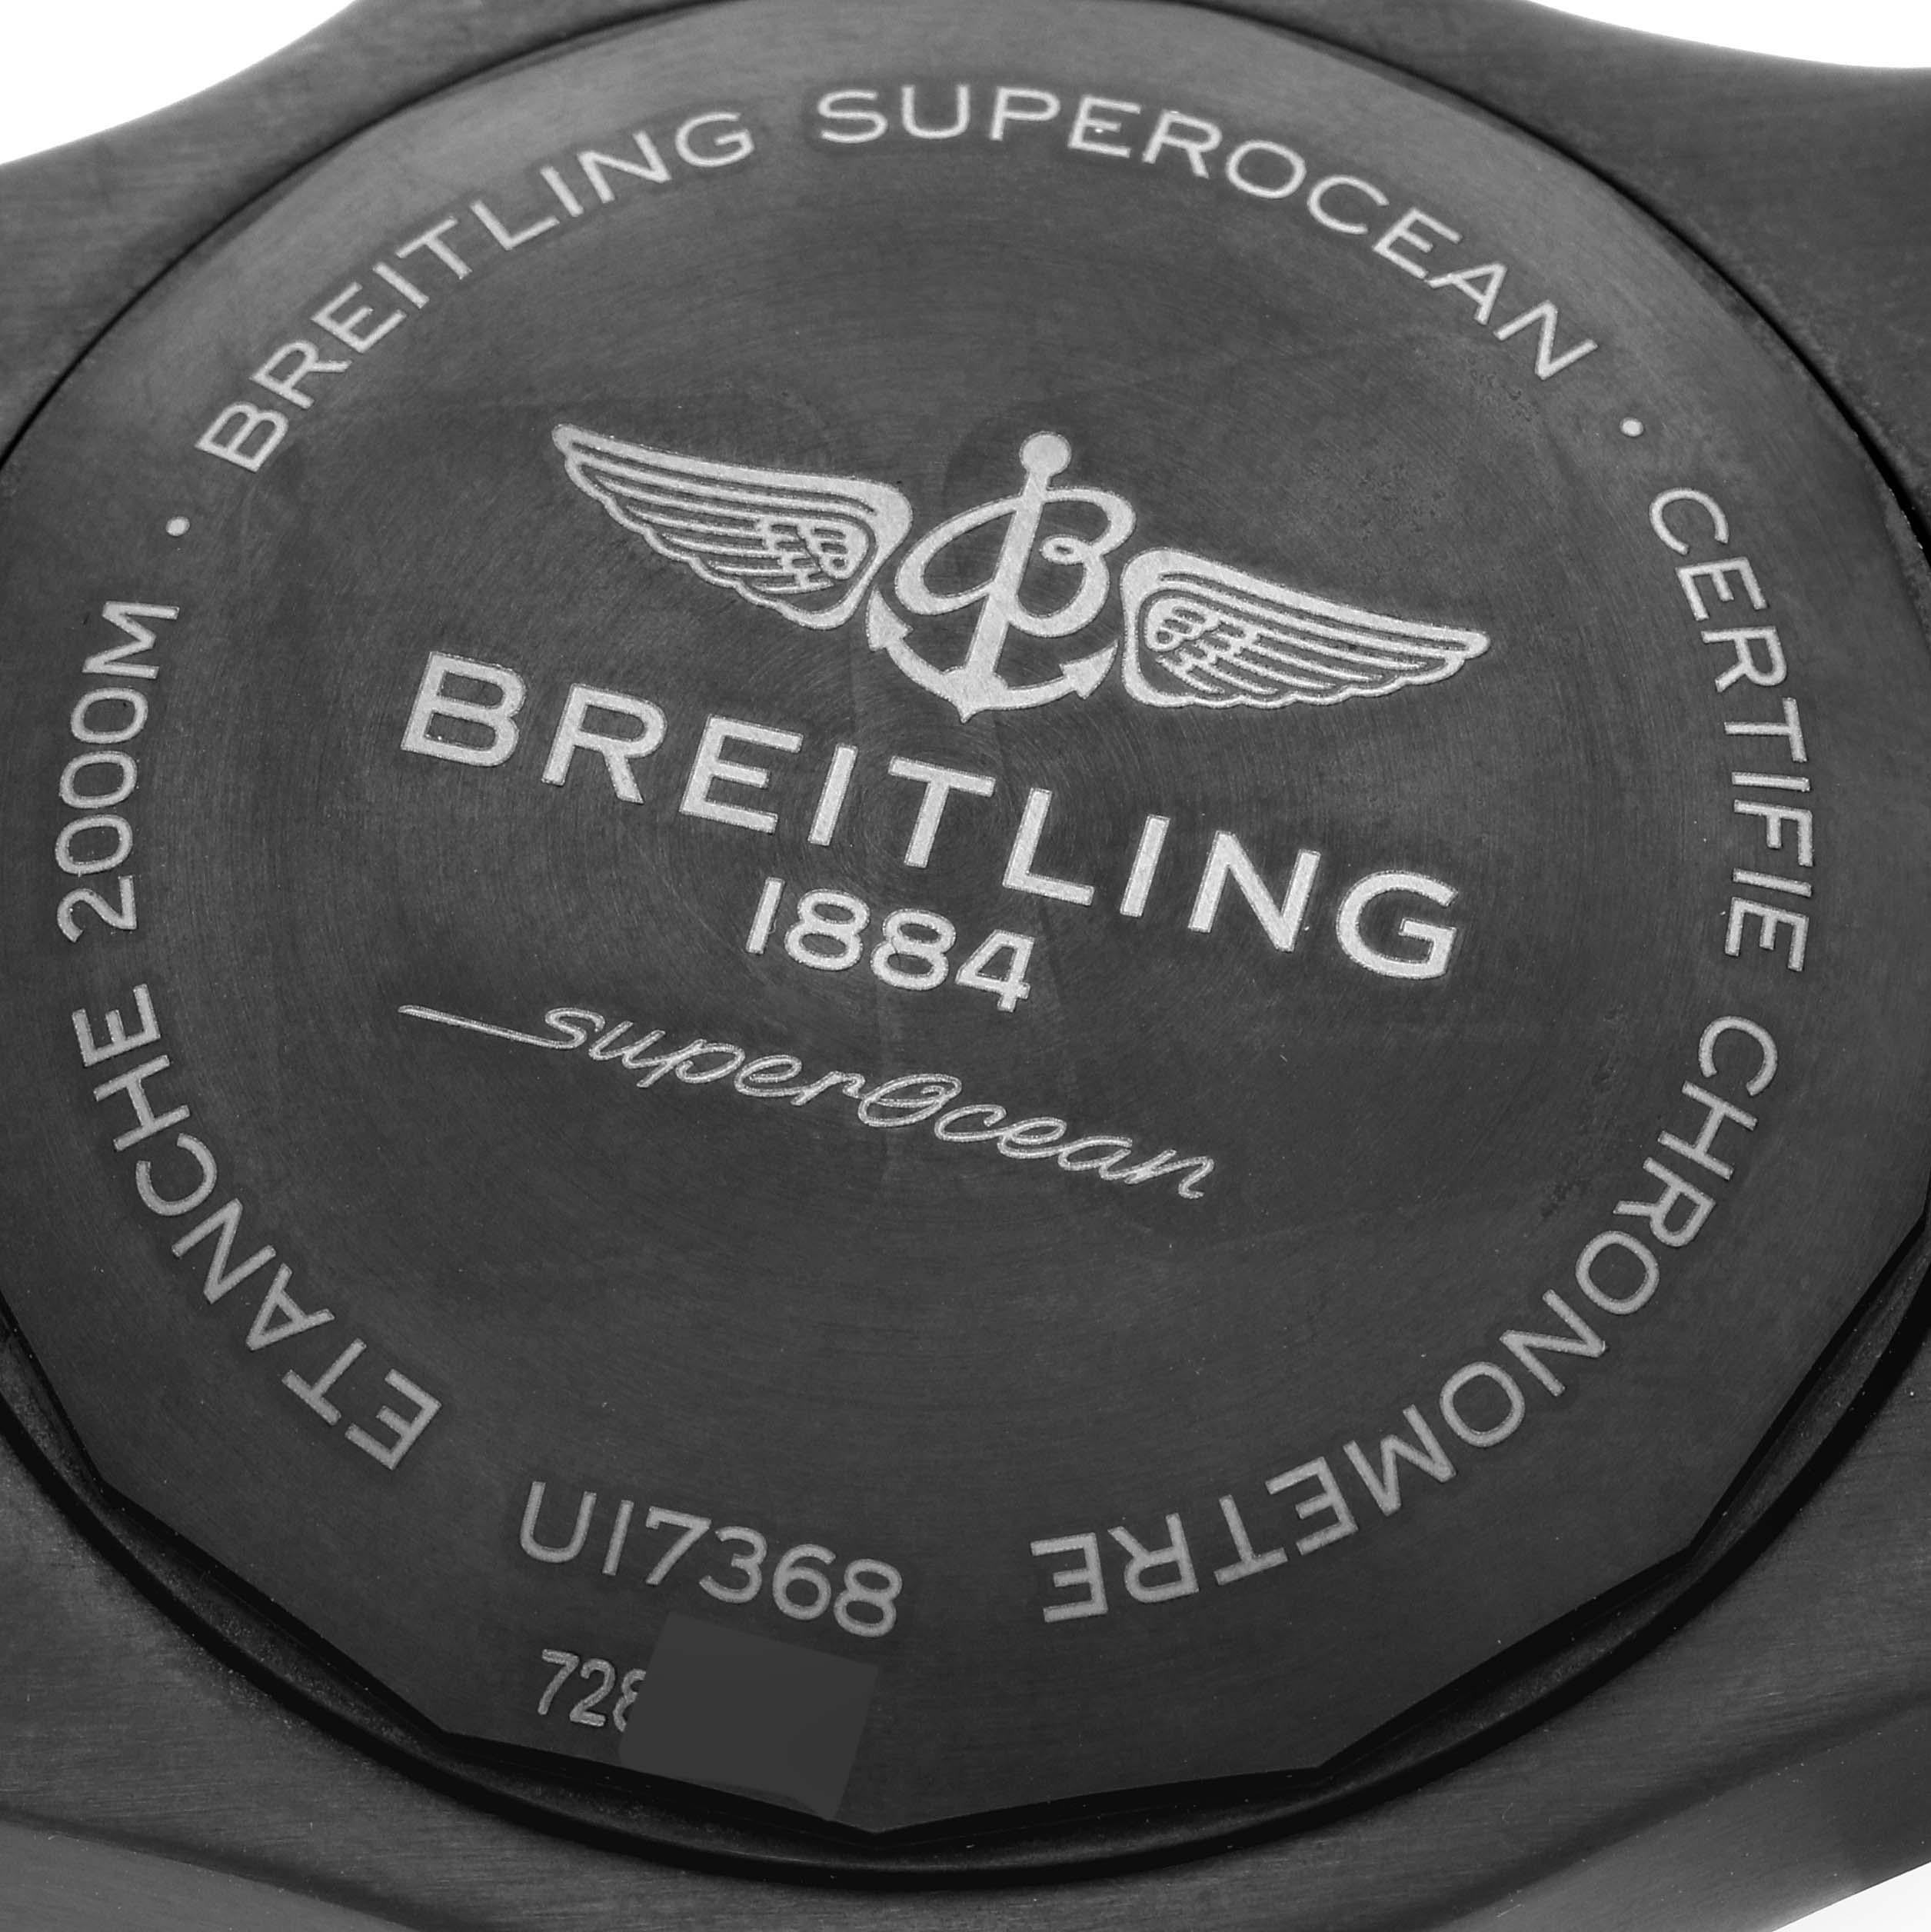 Breitling Superocean II Black Steel Rose Gold Mens Watch U17368 Unworn For Sale 2